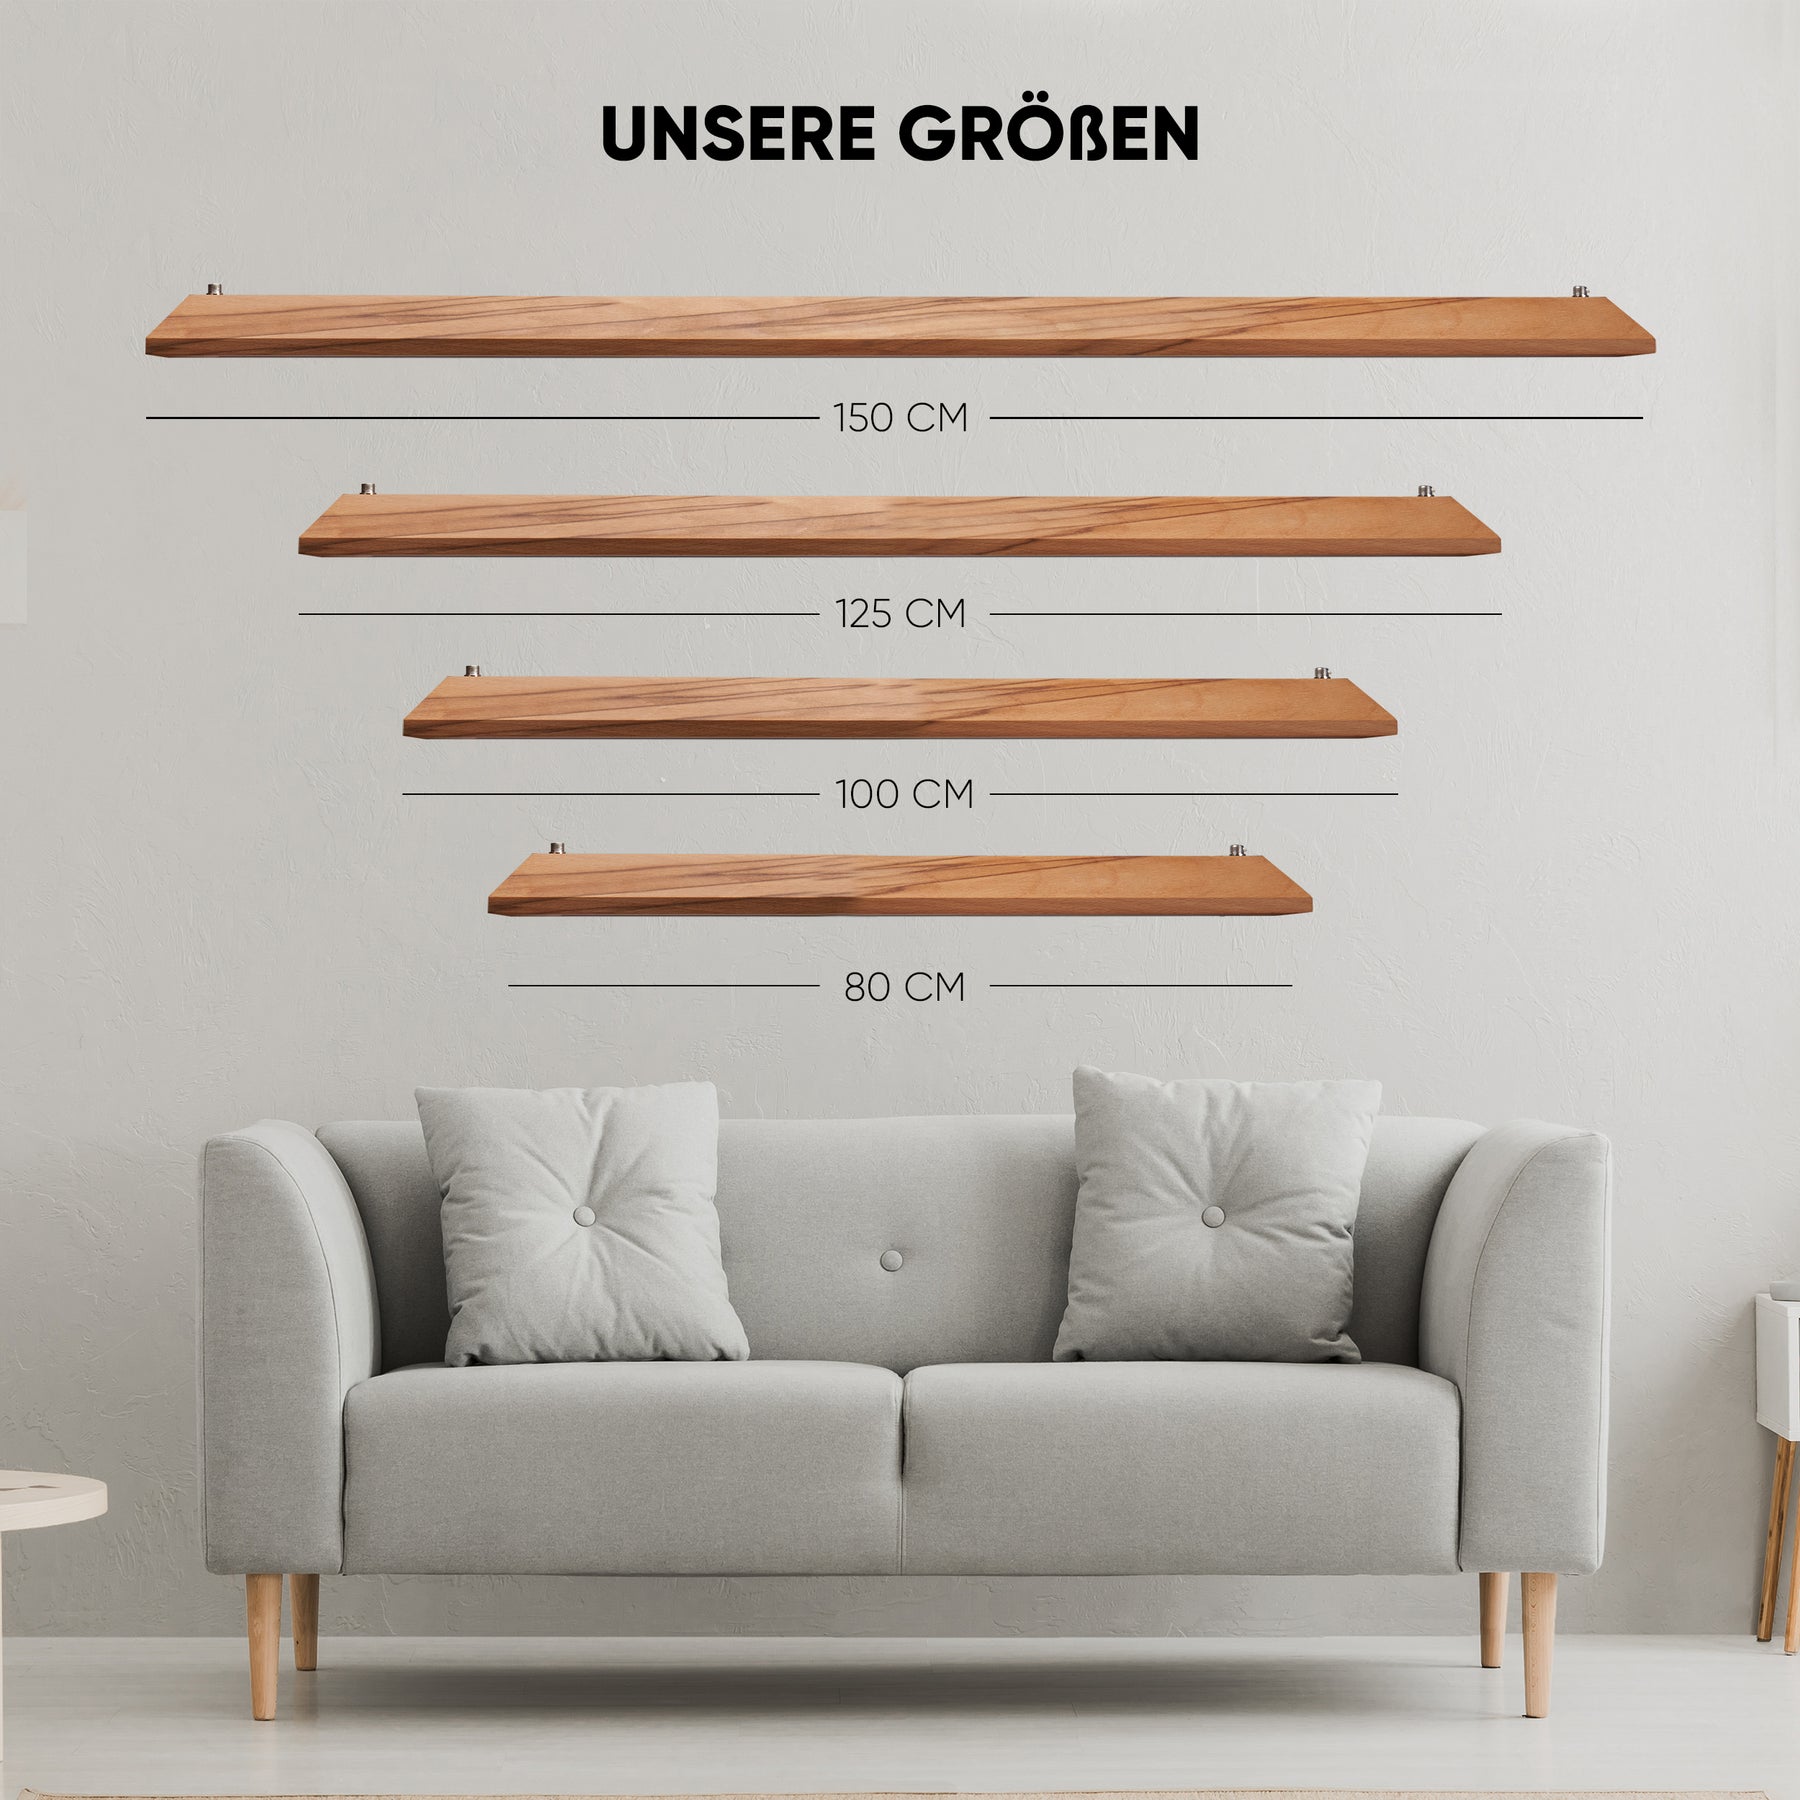  Bild mit 4 unterschiedlichen Größen unserer Designer Pendelleuchte aus Massivholz, Die Größe 150 cm , 125 cm, 100 cm und 80 cm.